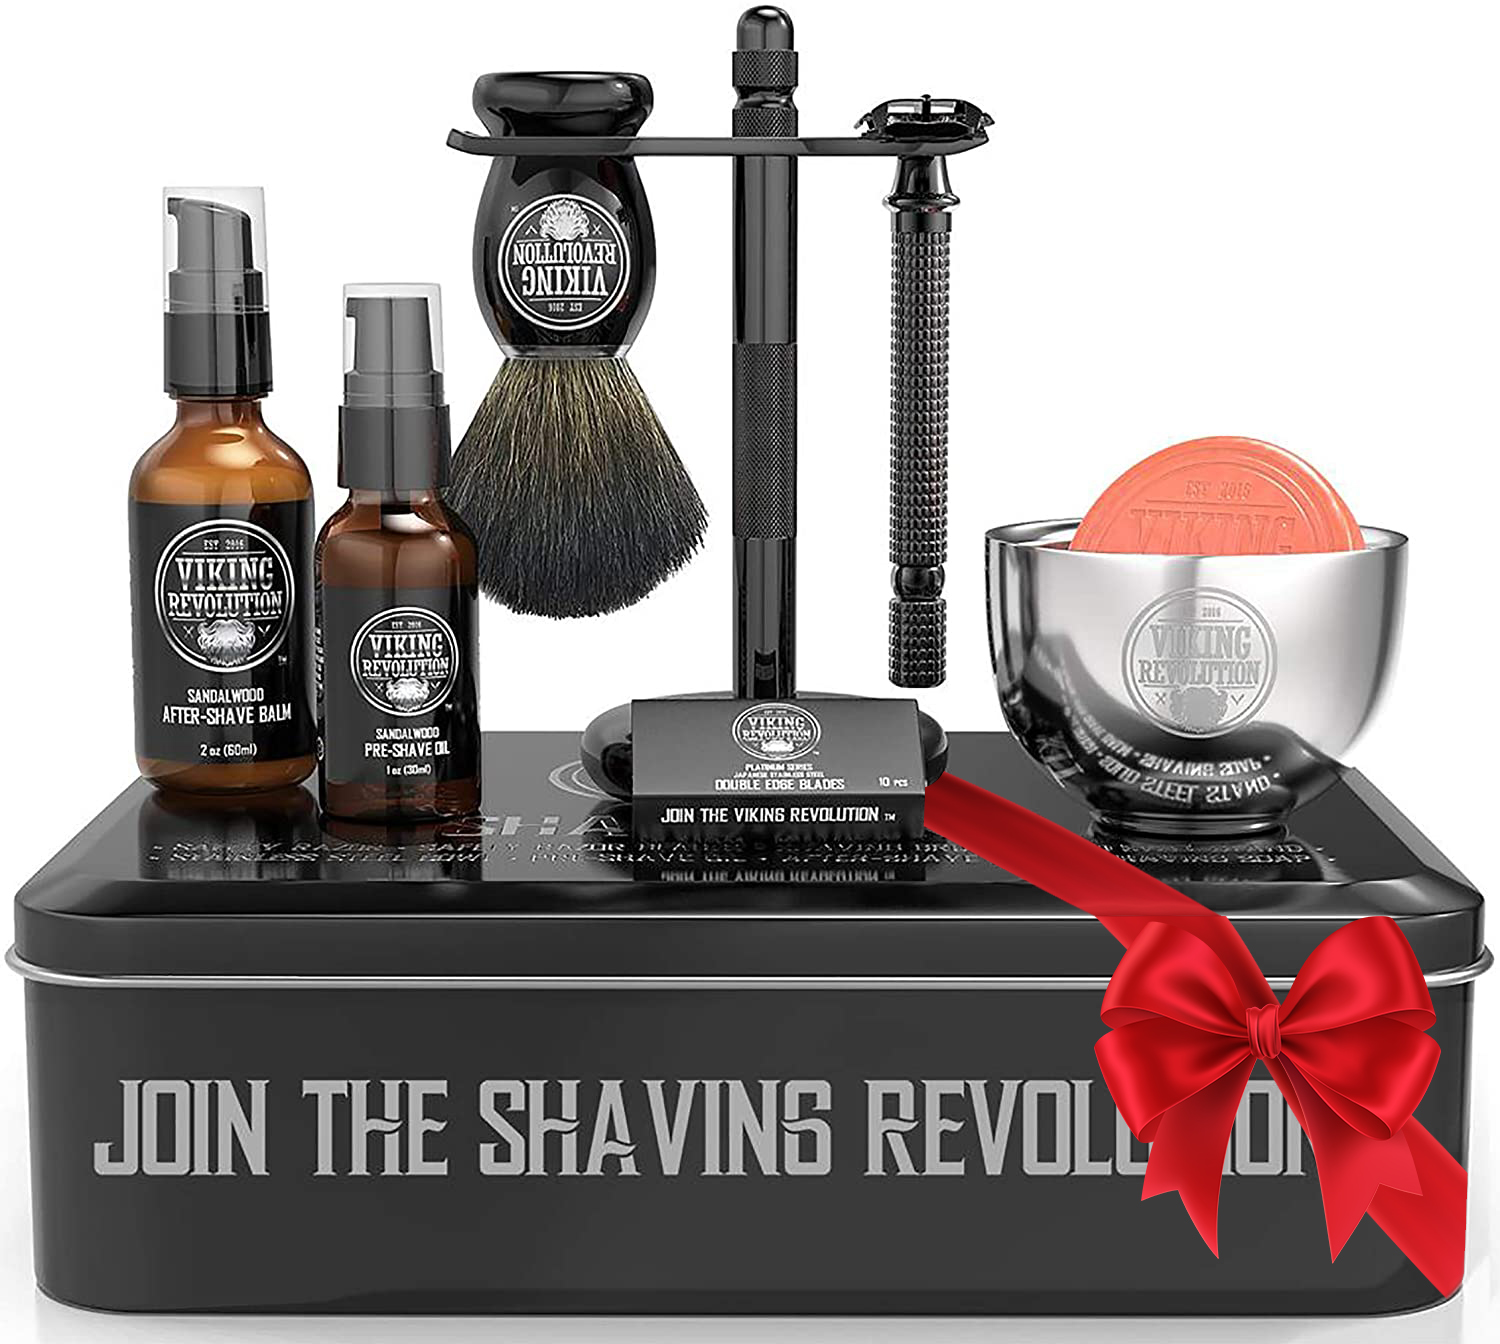 Viking Revolution - Shaving Kit For Men - Shaving Kit with Double Edge Razor, Stand, Bowl & More - Luxury Christmas Gifts For Men - image 1 of 10